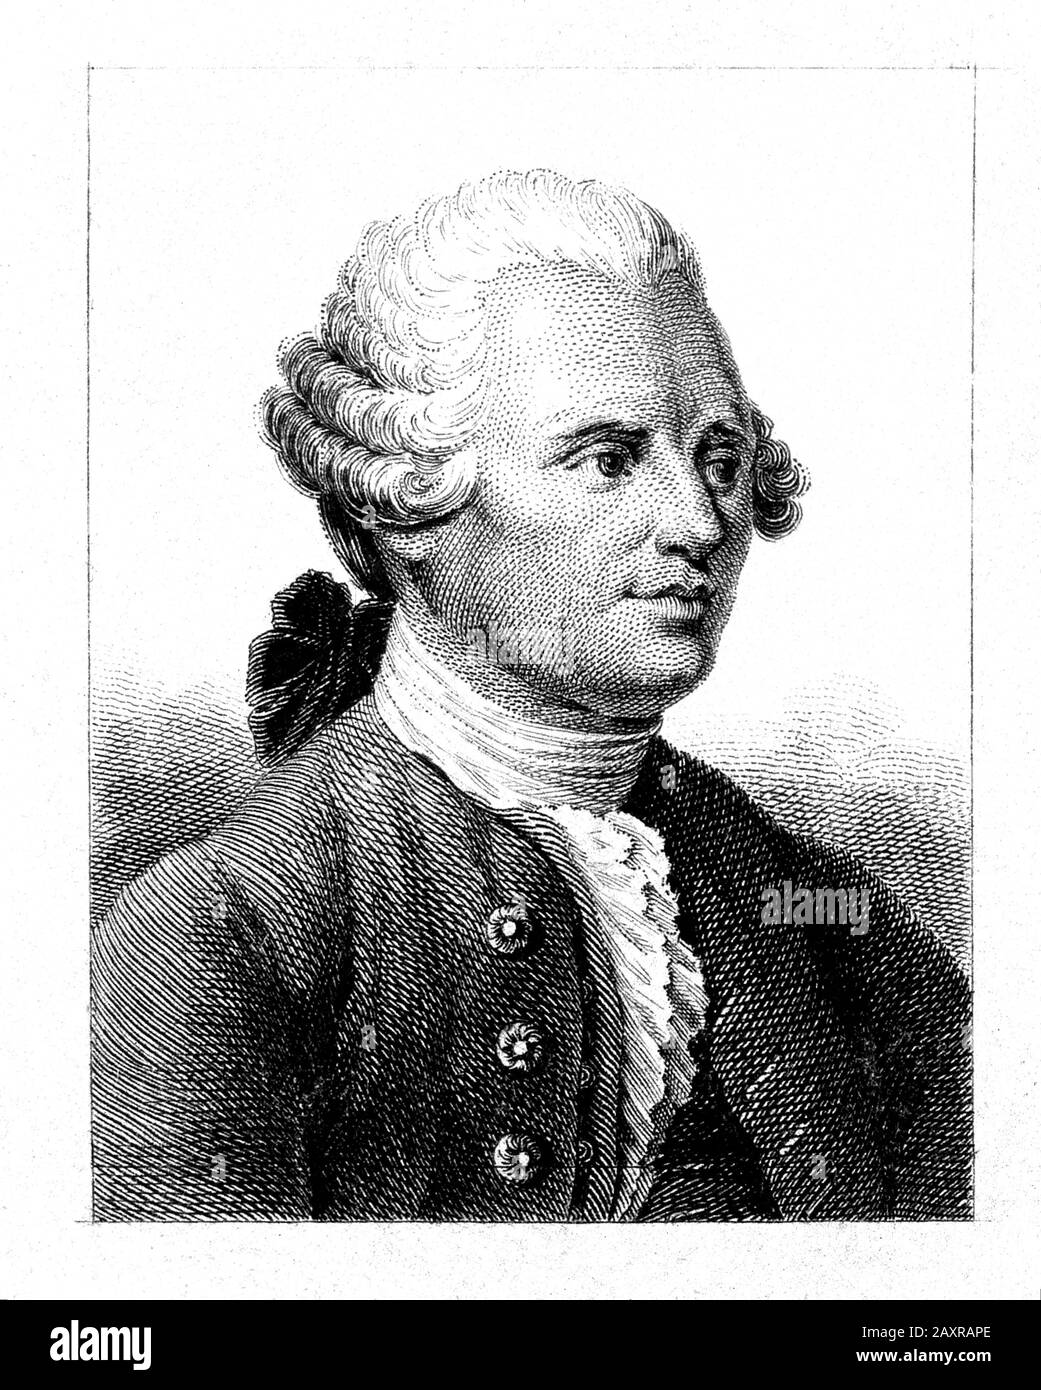 1783 CA , FRANCE : le célèbre mathématicien français , mécaniste , physicien , philosophe et théoricien de la musique JEAN LE ROND d'ALEMBERT ( 1717 – 1783 ) . Portrait gravé par auteur non identifié , XIX siècle . Jusqu'en 1759, il est également co-rédacteur en chef avec Denis Diderot de l'Encyclopédie. - ALEMBERT - ILLUMINISTA - ILLUMINISM - ENCICLOPEDIA - ENCICLOPEDISTA - ILLUMNINISMO - ILLUMINISM - FILOSOFO - FILOSOFIA - PHILOSOPHIE - perruque - perrucca - col - coletto - incisione - gravure - illustration - illustrazione - Dalembert - Alembert - Archivio Gembert - Archibert Banque D'Images